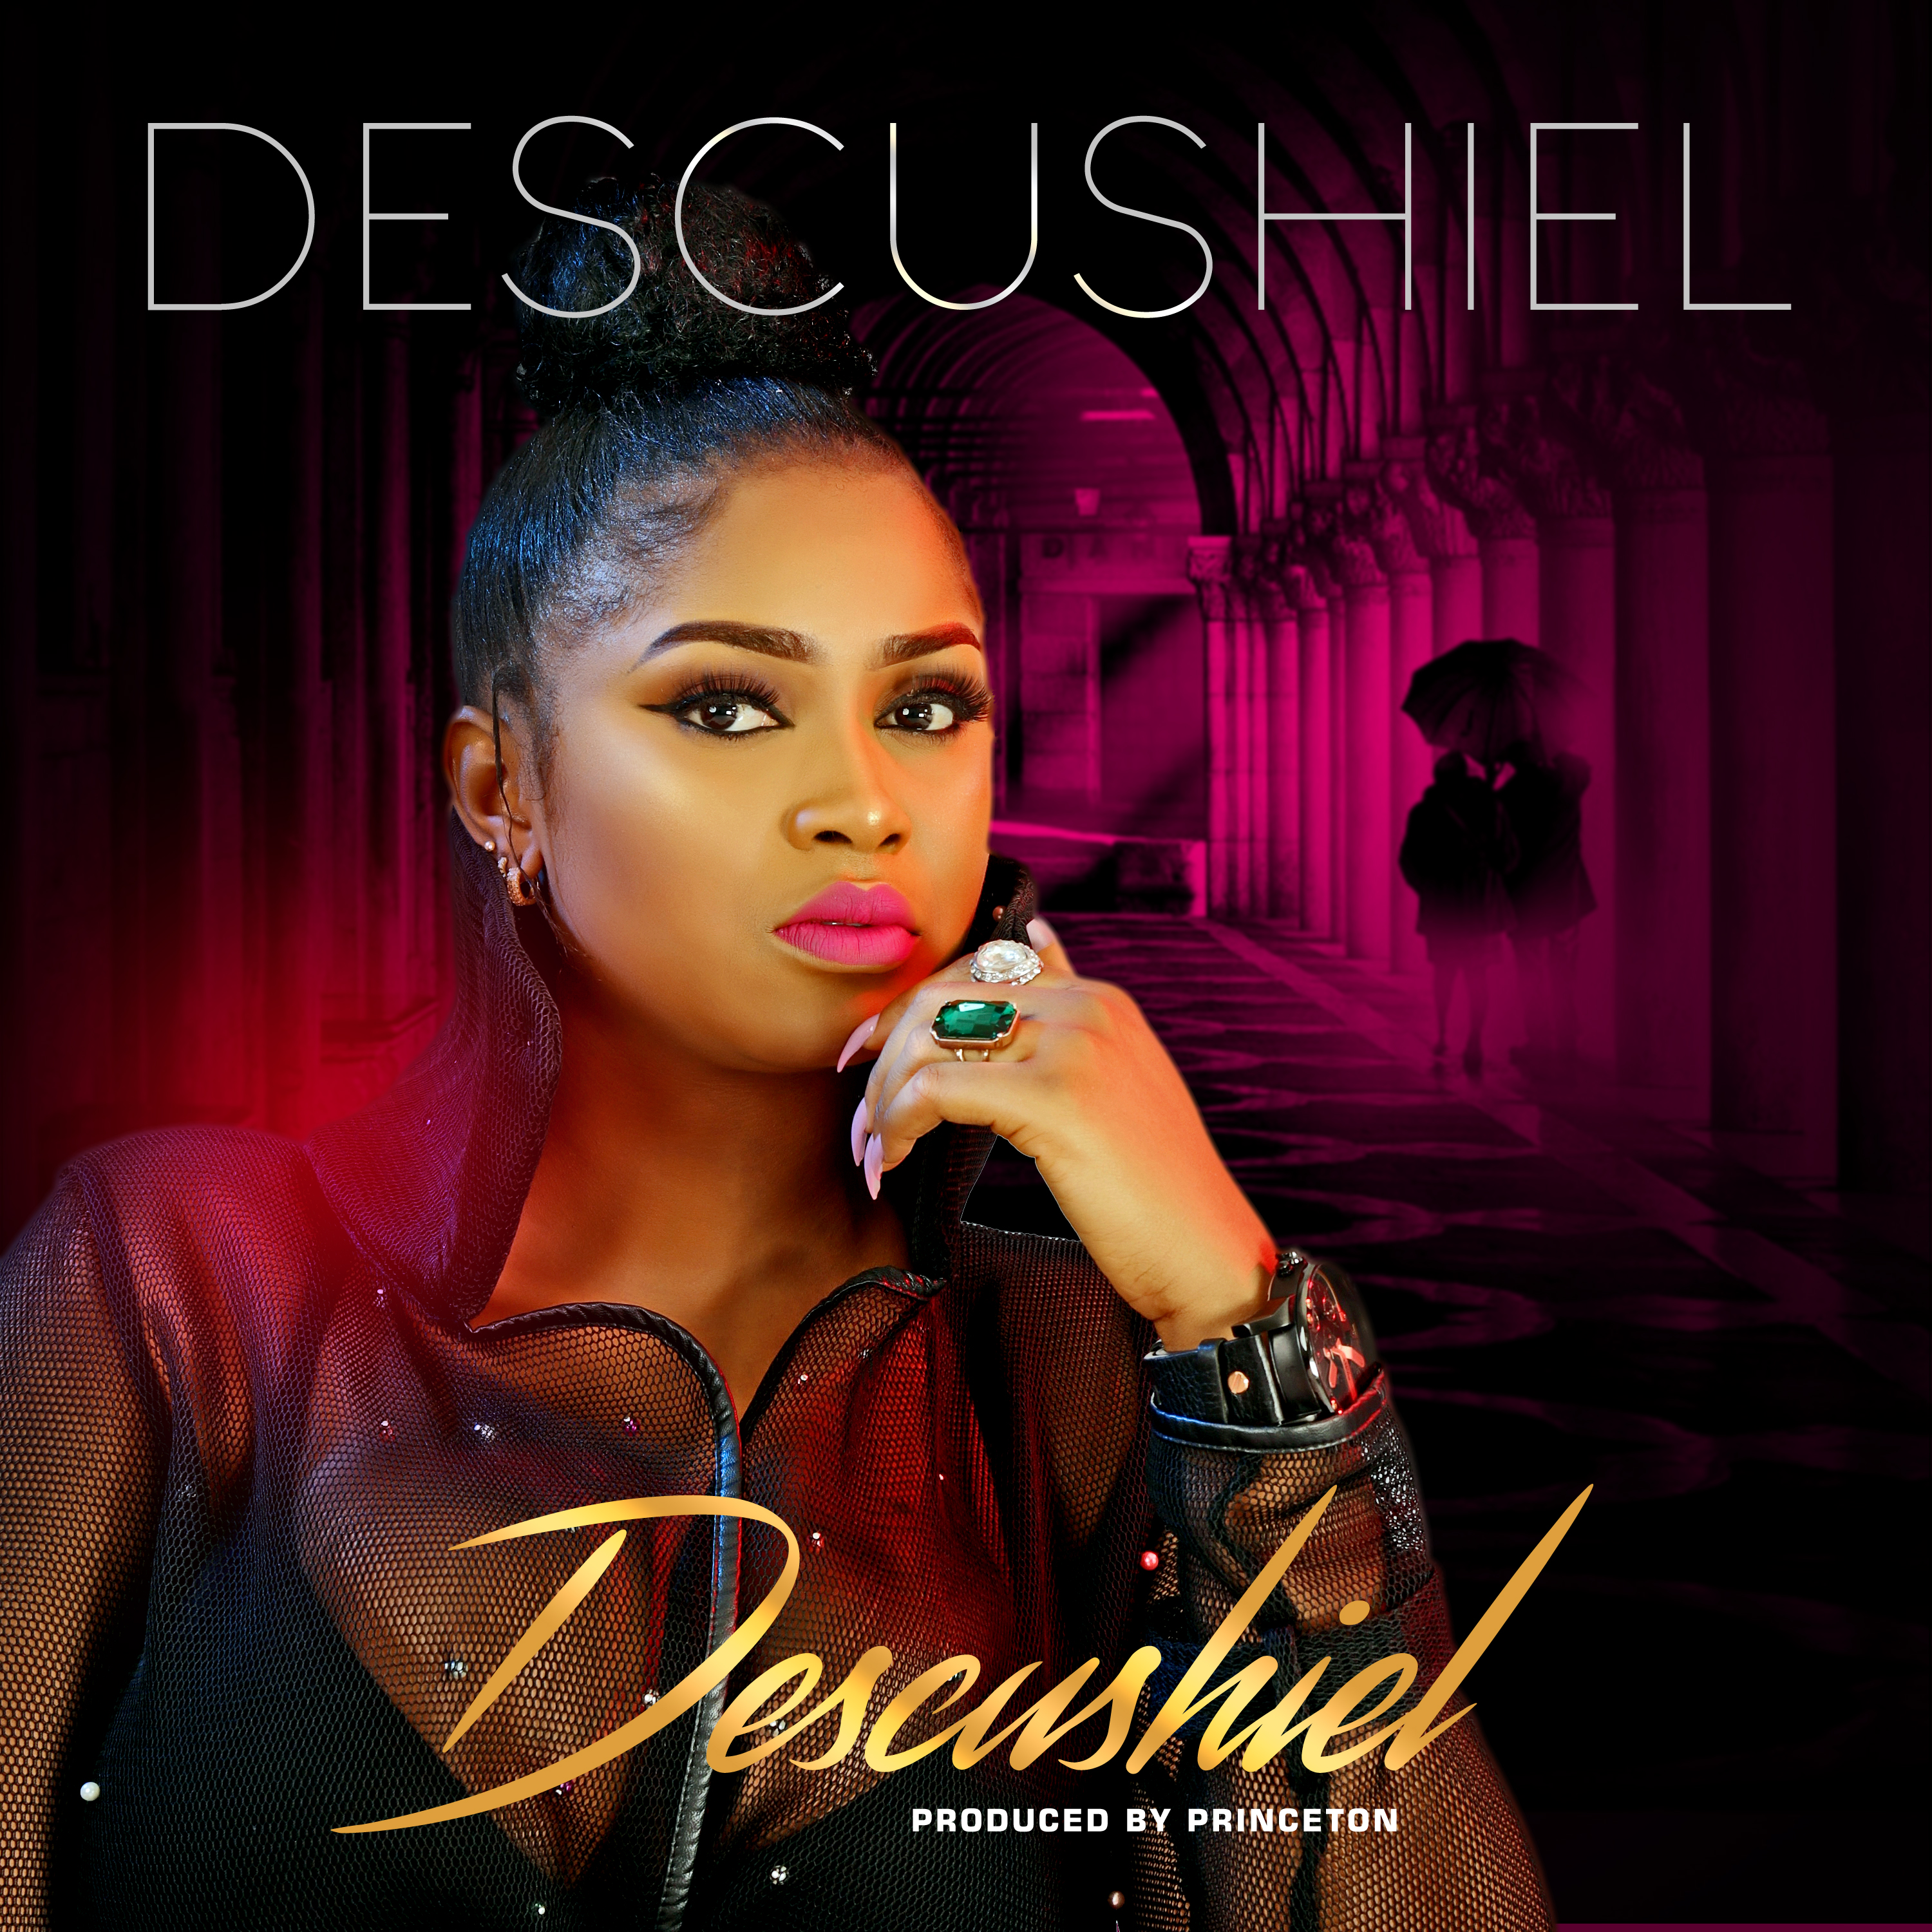 Descushiel – Descushiel - Descushiel (Prod. Princeton)